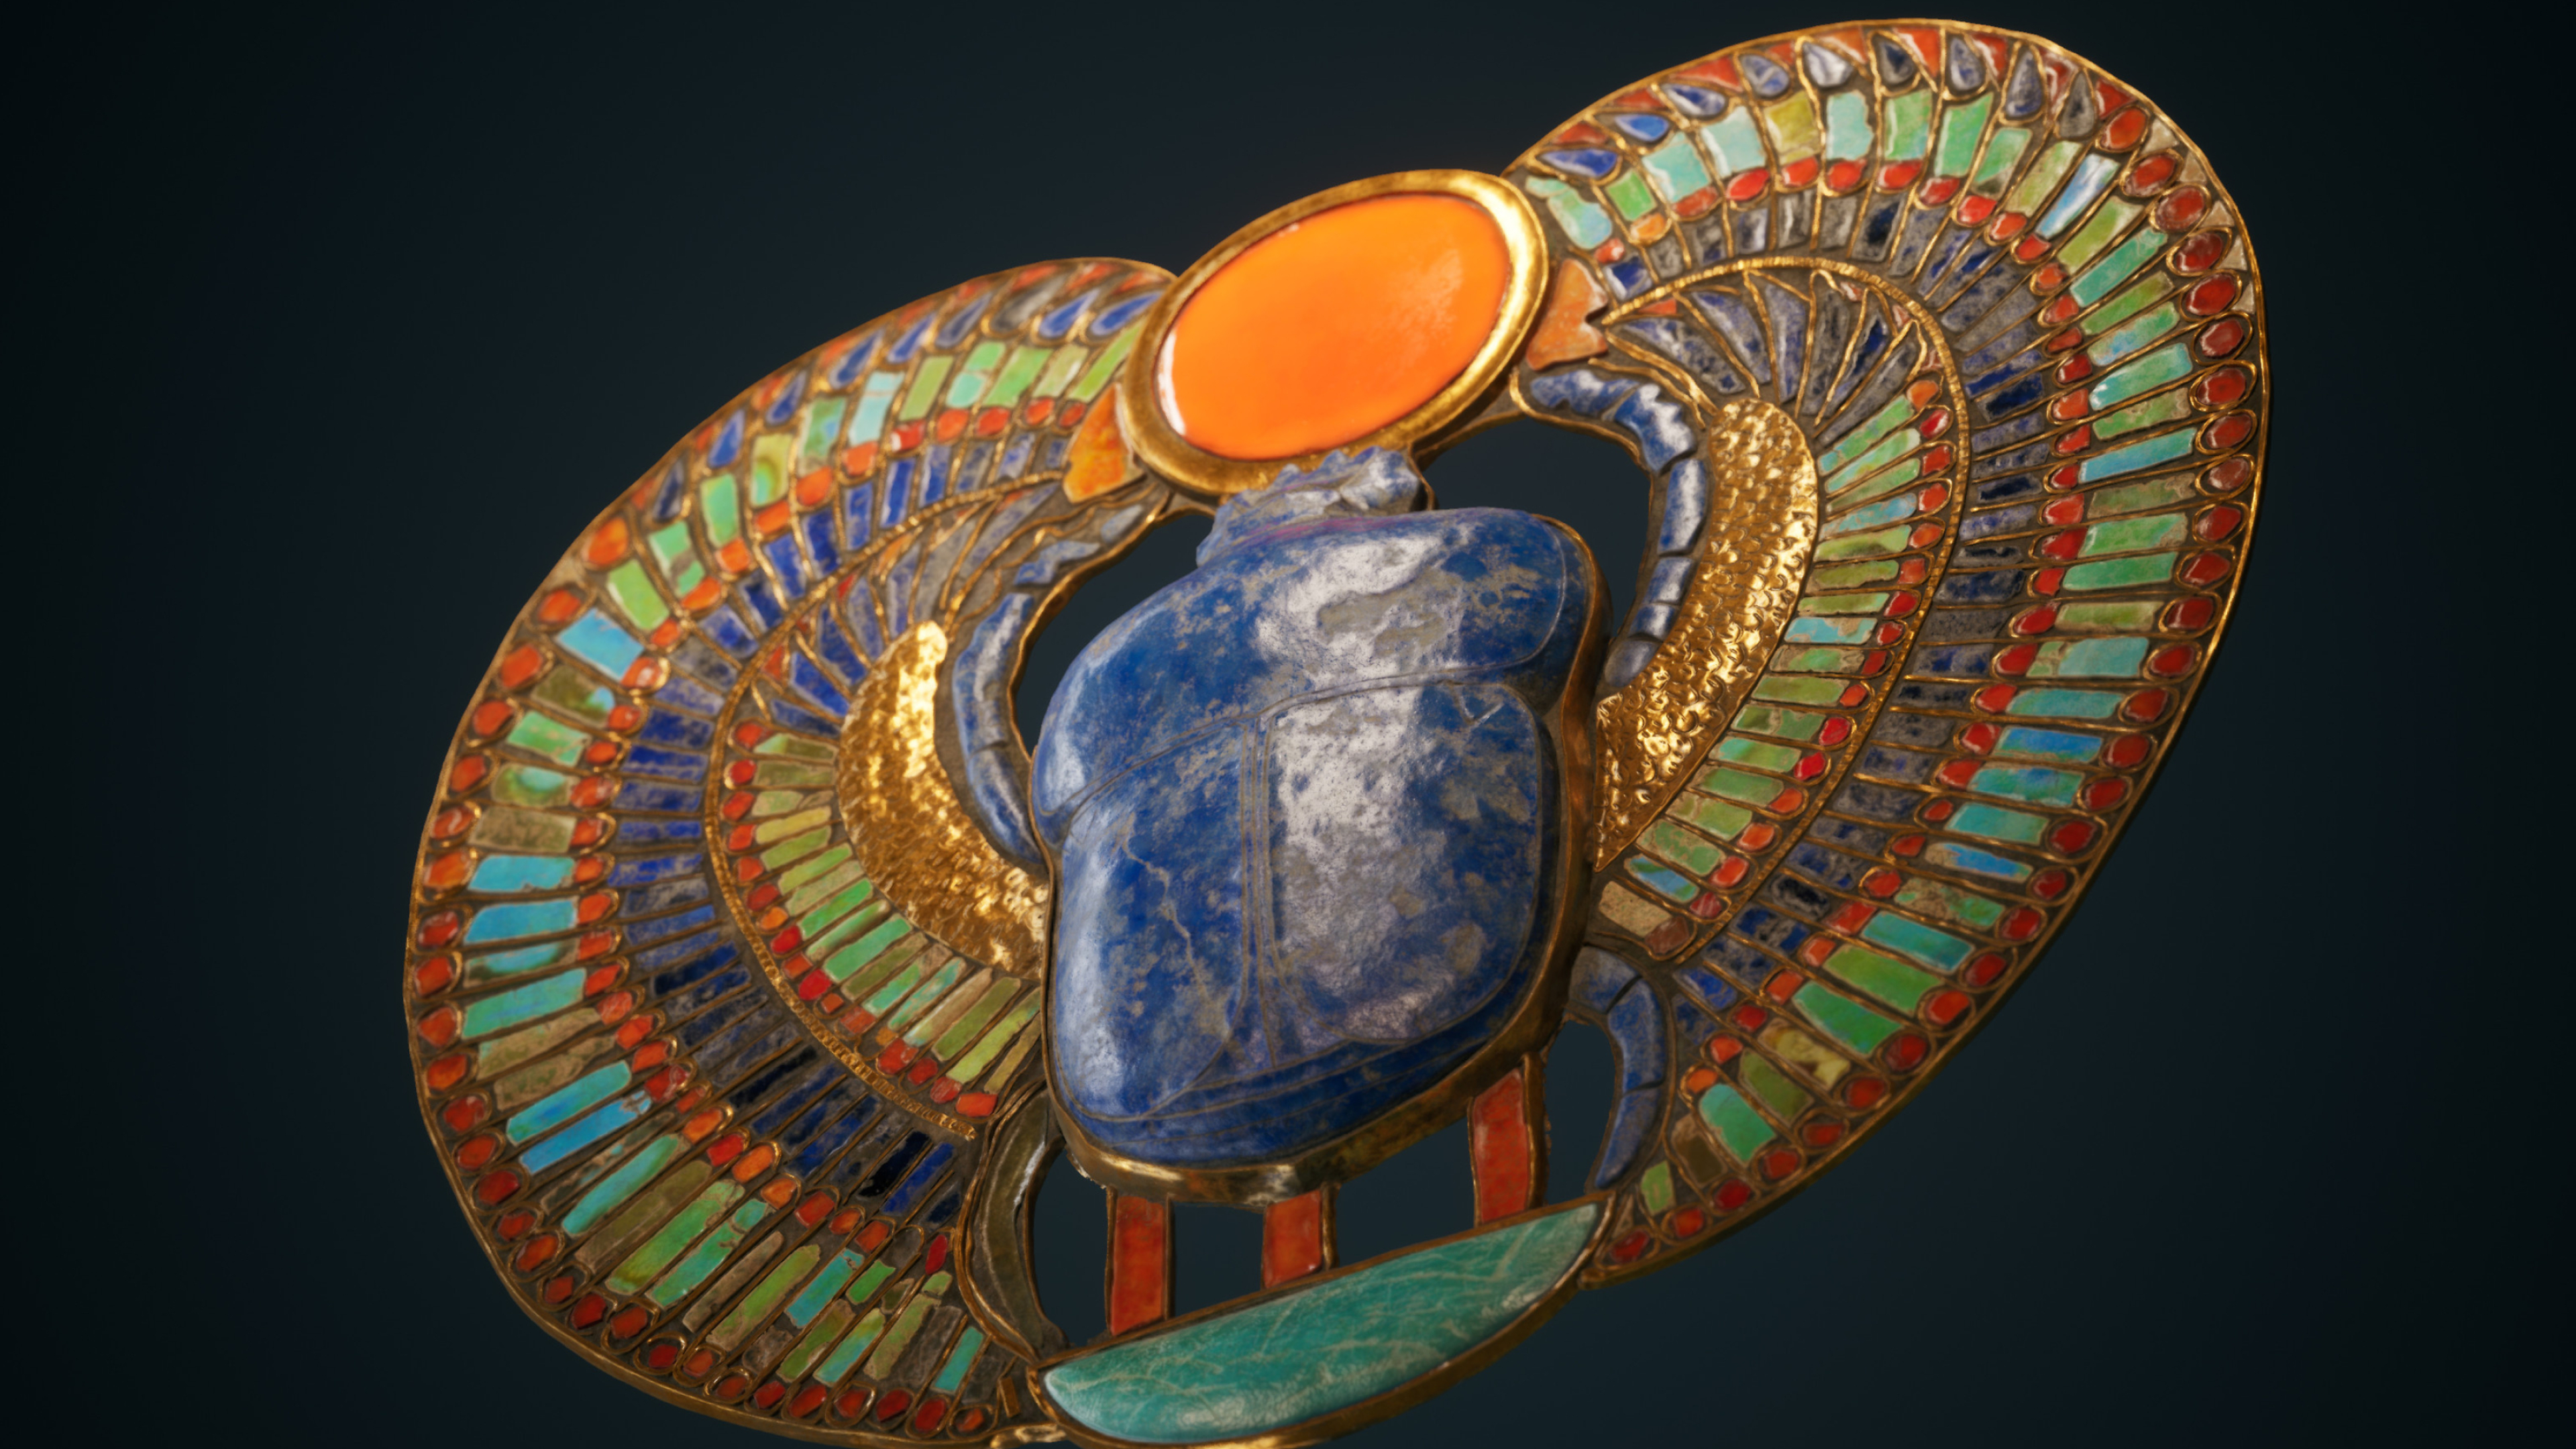 Artstation, Pectoral scarab of King Tutankhamun, 3840x2160 4K Desktop